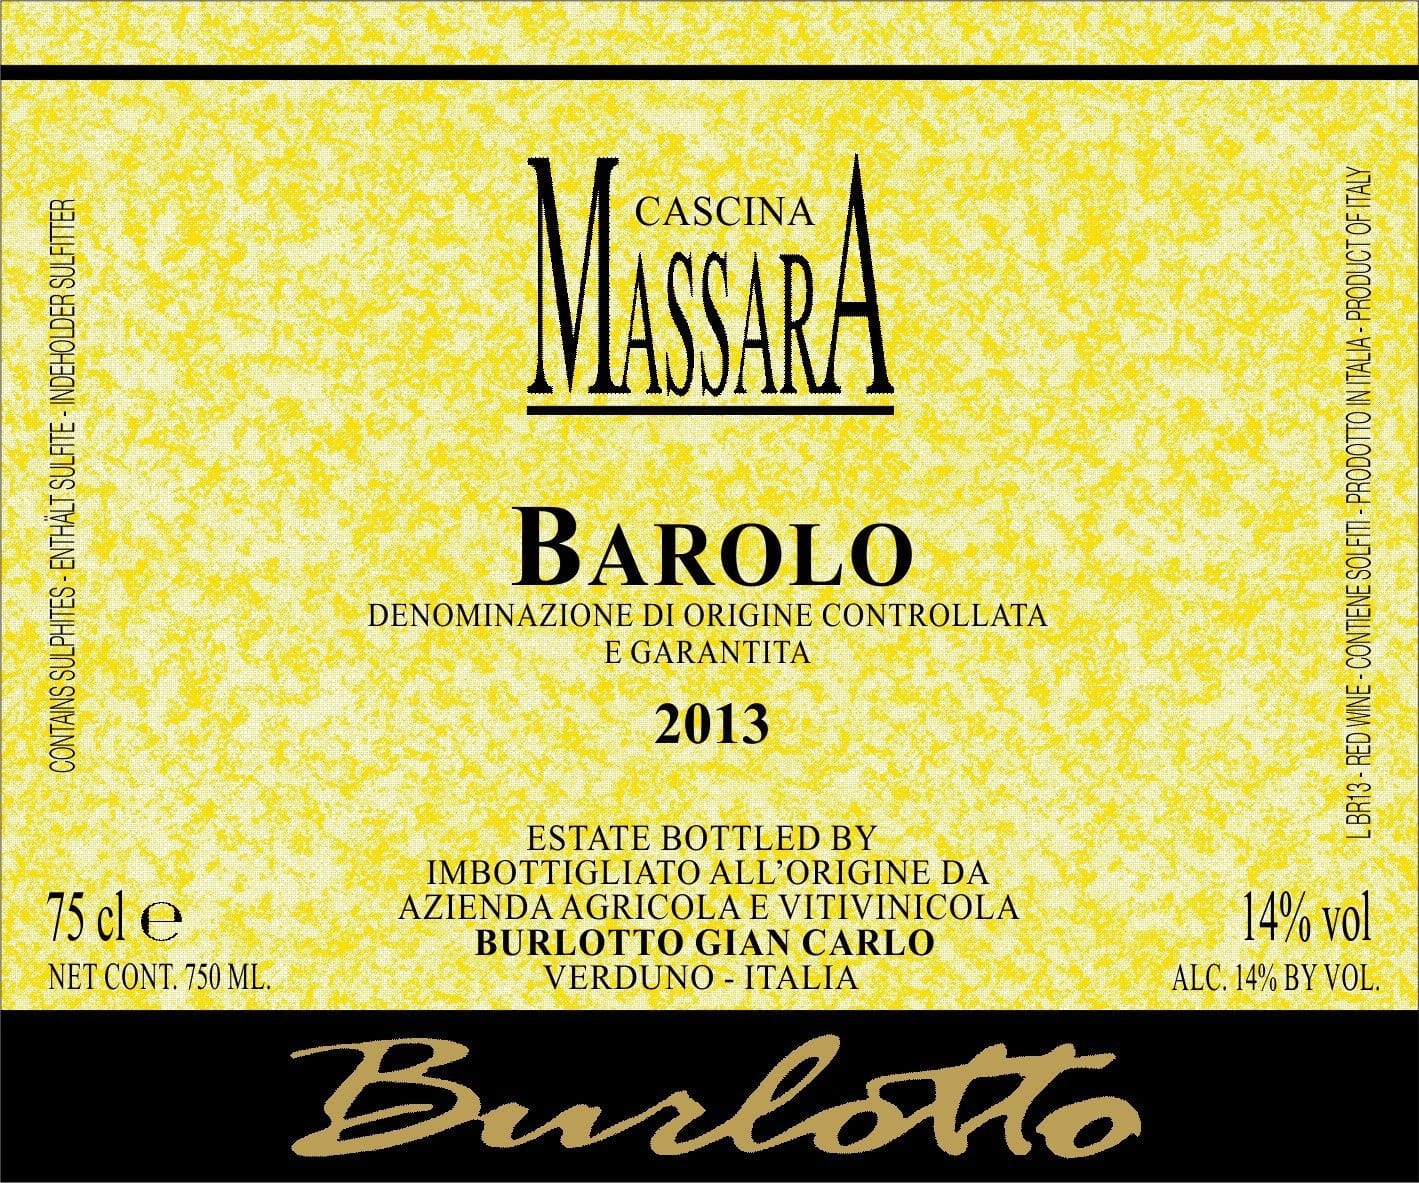 Massara Barolo front label af8d4cce89f941d68d09fd969a265b6d